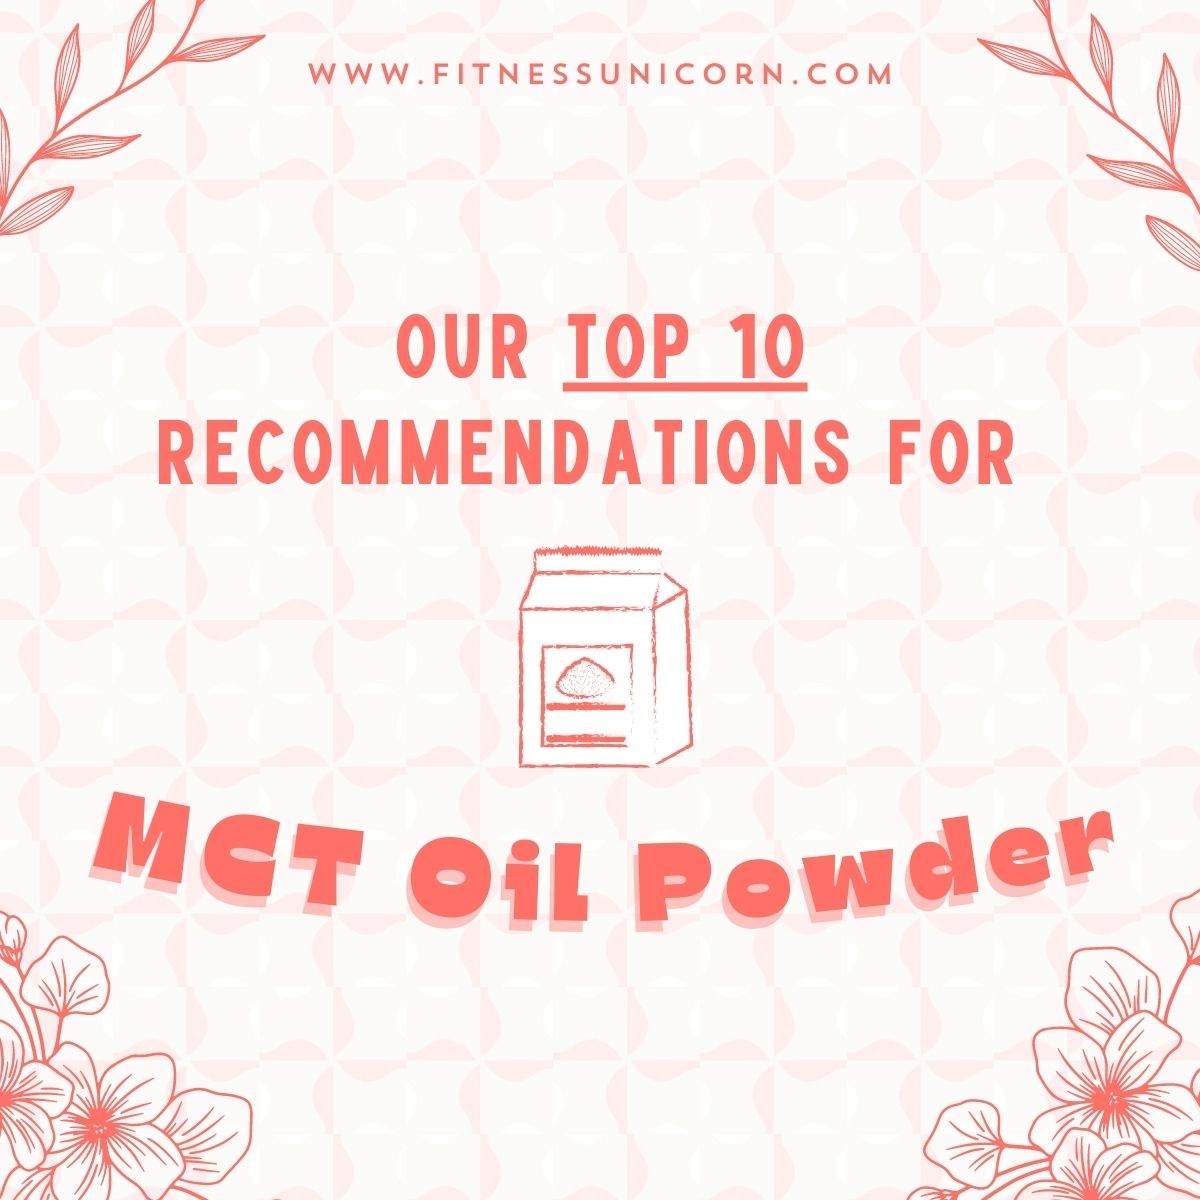 Best mct oil powder